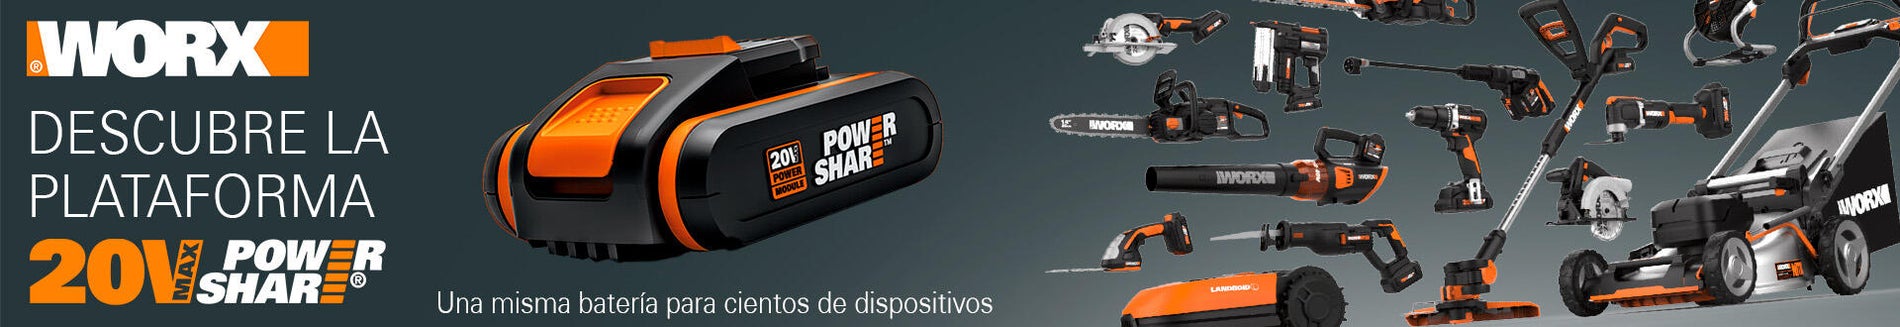 Worx DIY Worx WX354.9 - Taladro percutor Brushless Slammer Drill 20V (S/bat)